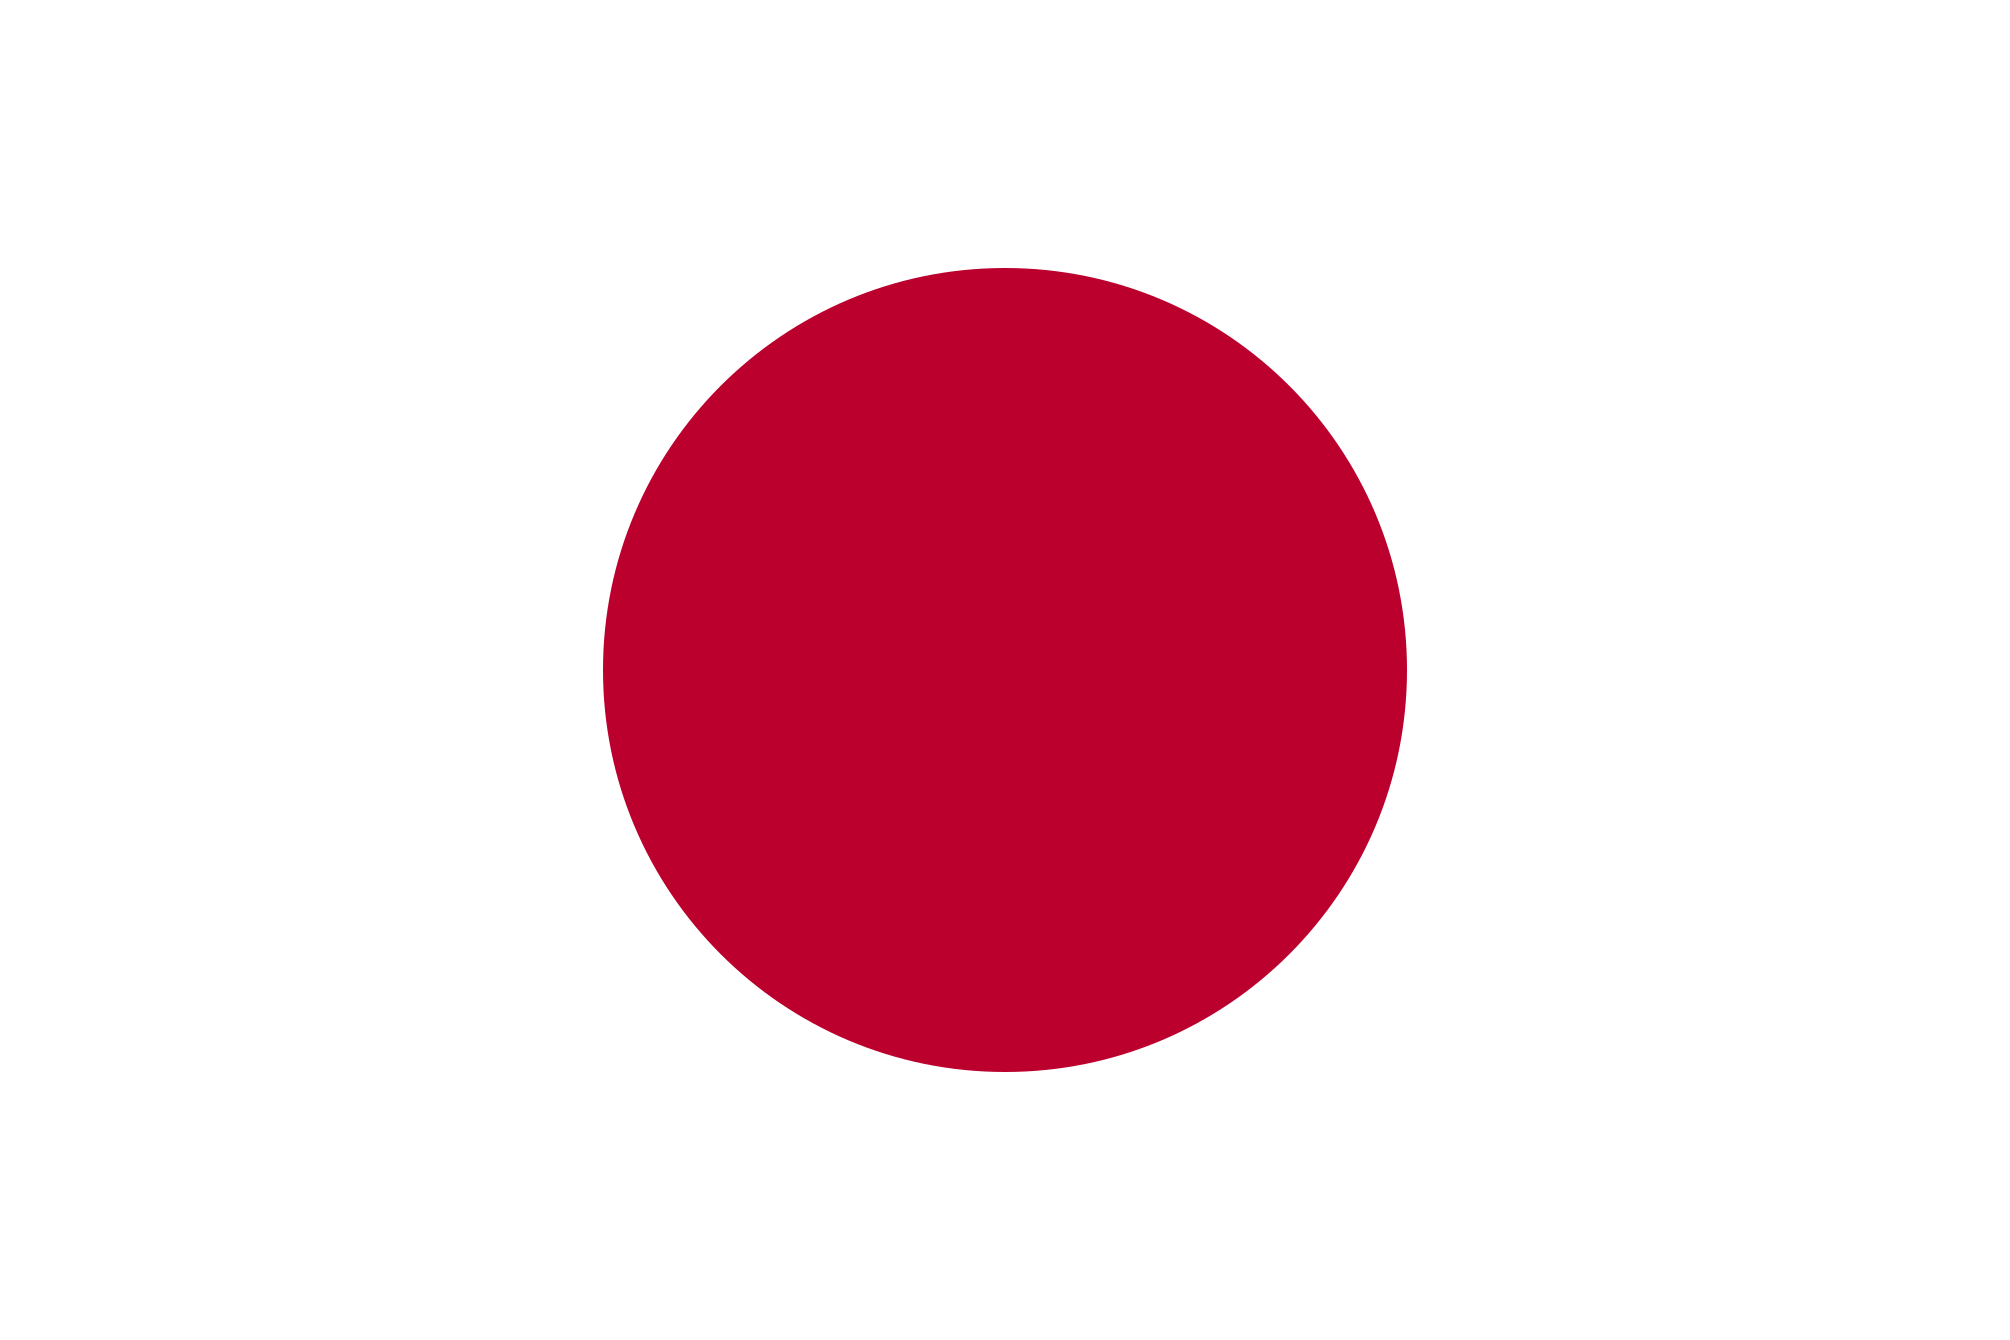 Imagem, bandeira do estado do estado da Japao - na resolucao de 2010x1340 - Leste da Ásia